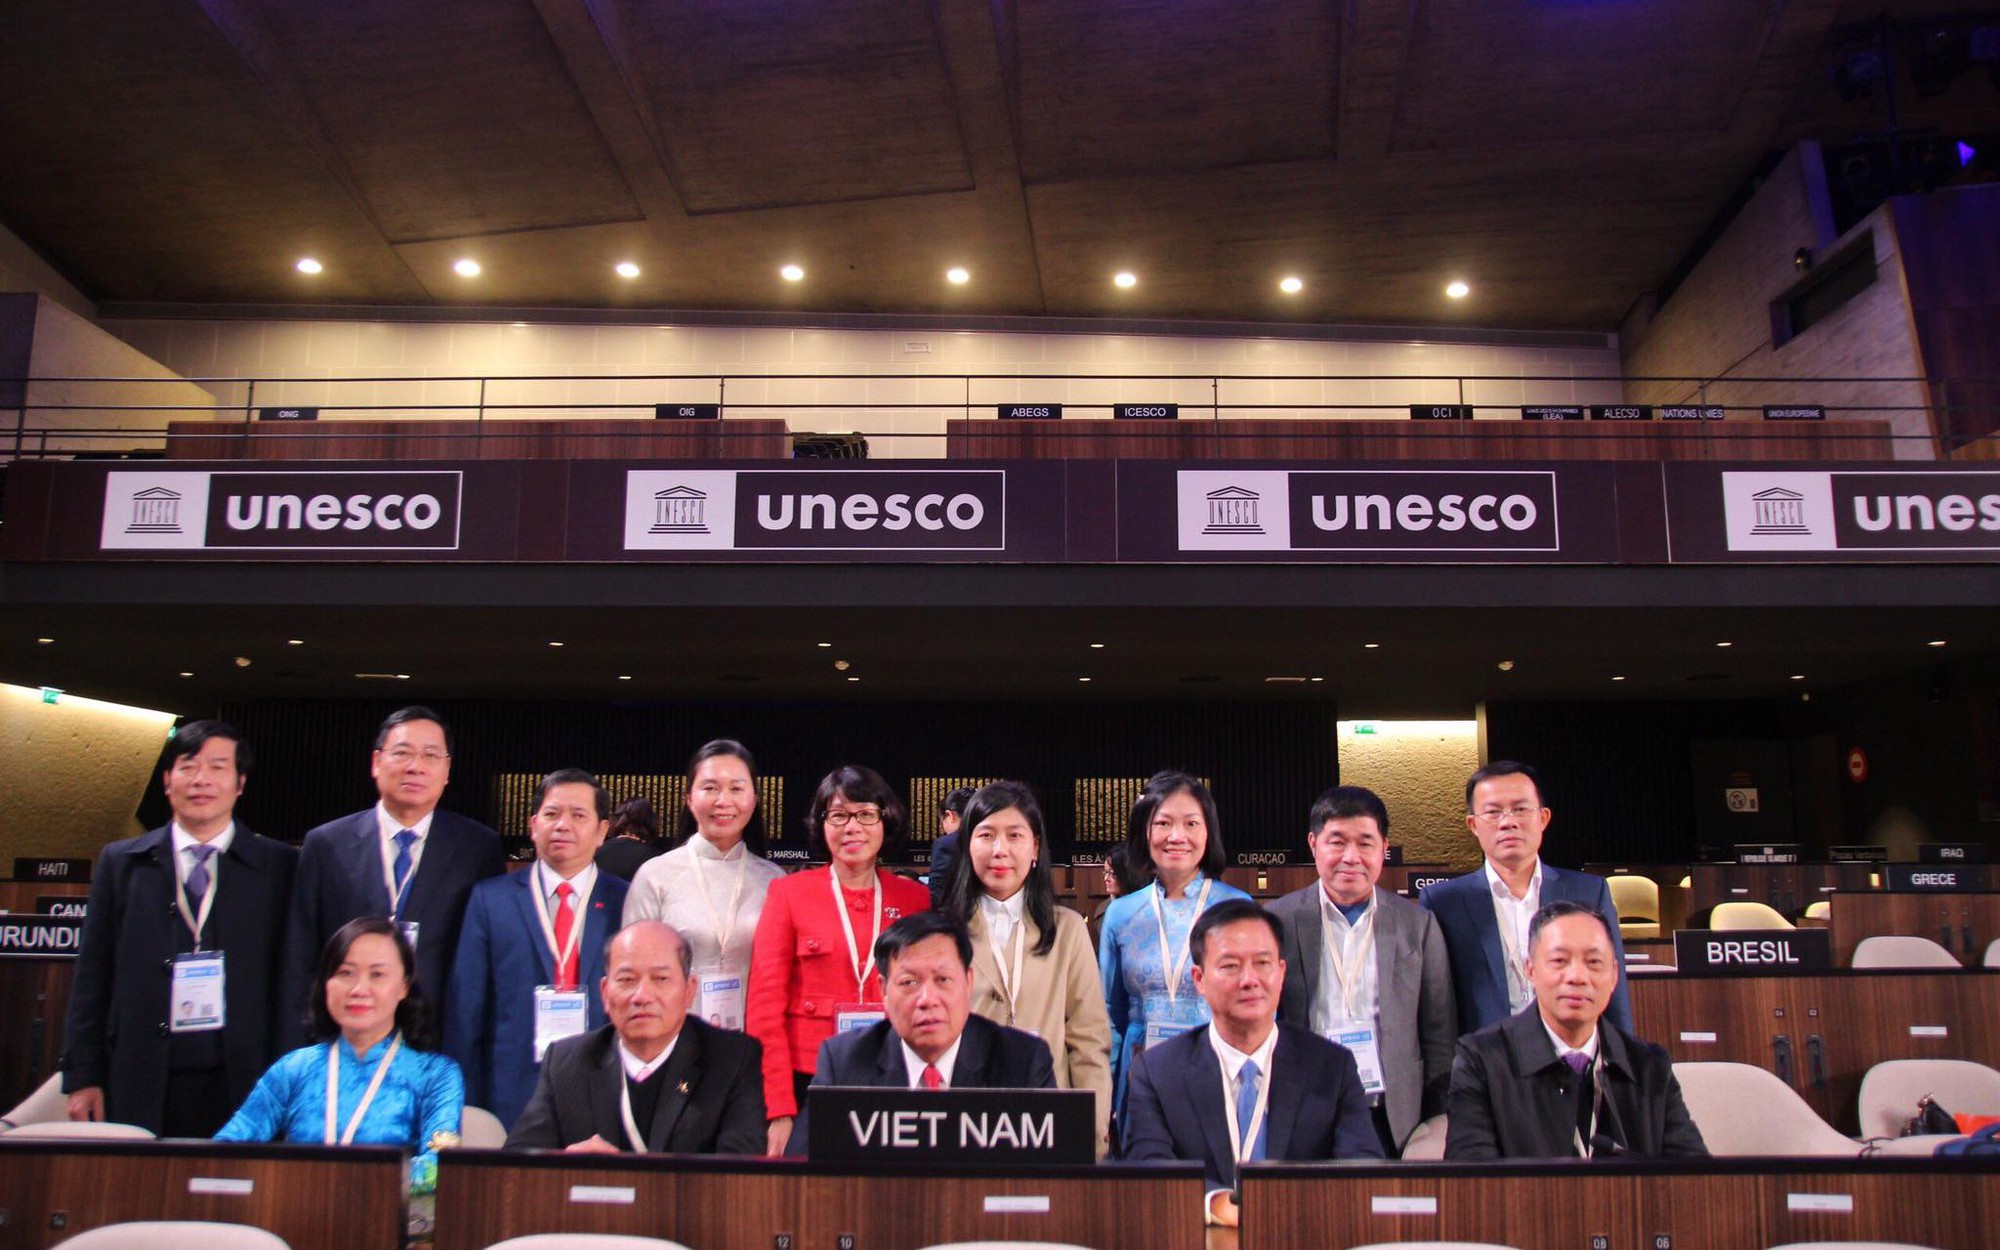 Thứ trưởng Bộ Y tế Đỗ Xuân Tuyên tham dự kỳ họp lần thứ 42 Đại Hội đồng UNESCO